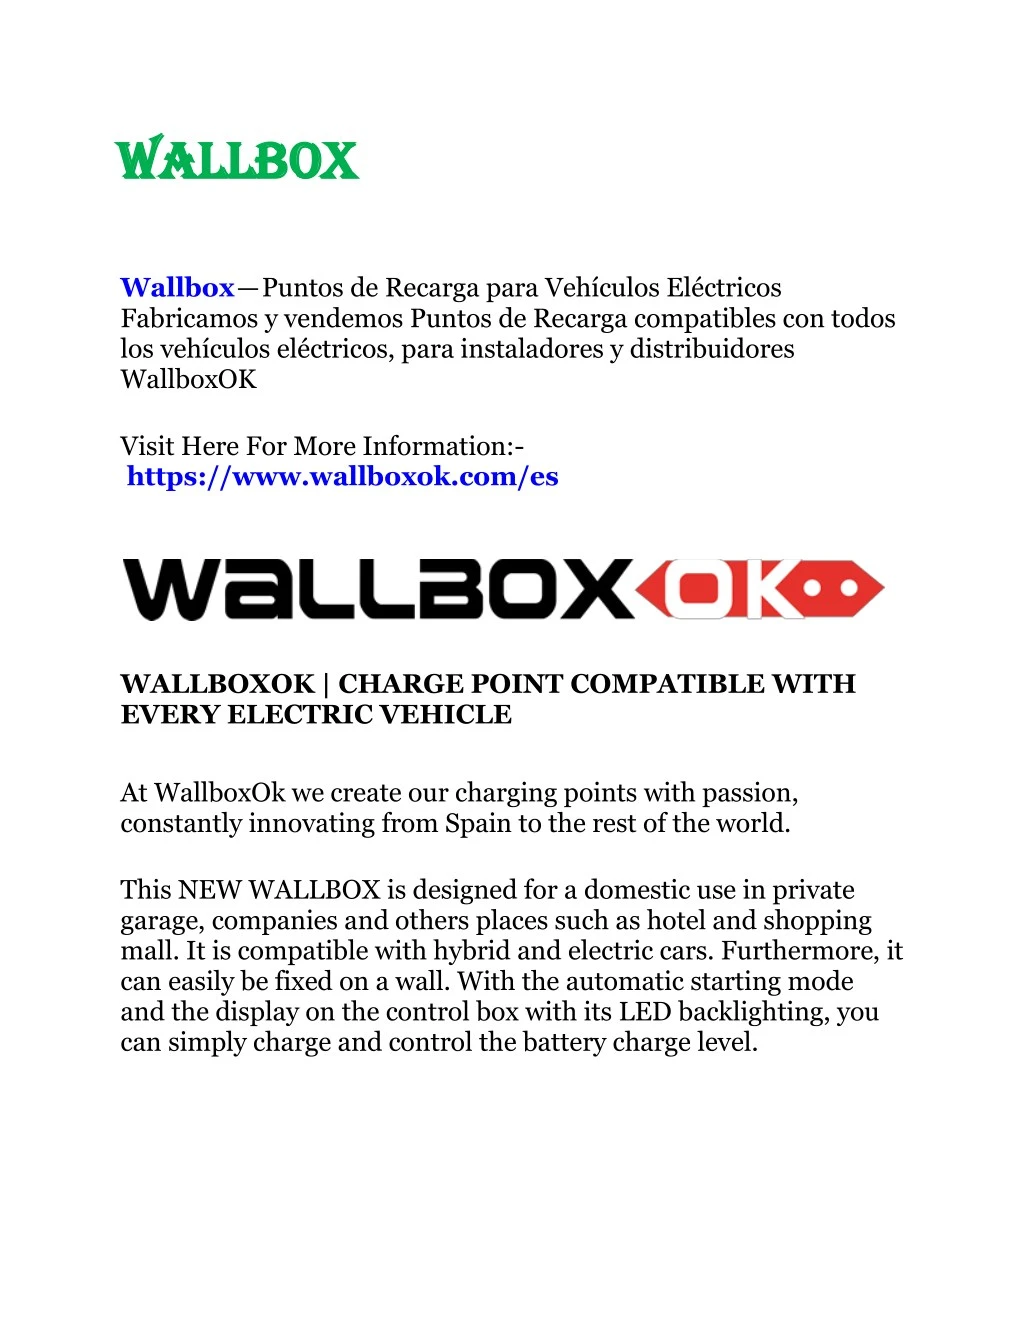 wallbox wallbox wallbox puntos de recarga para